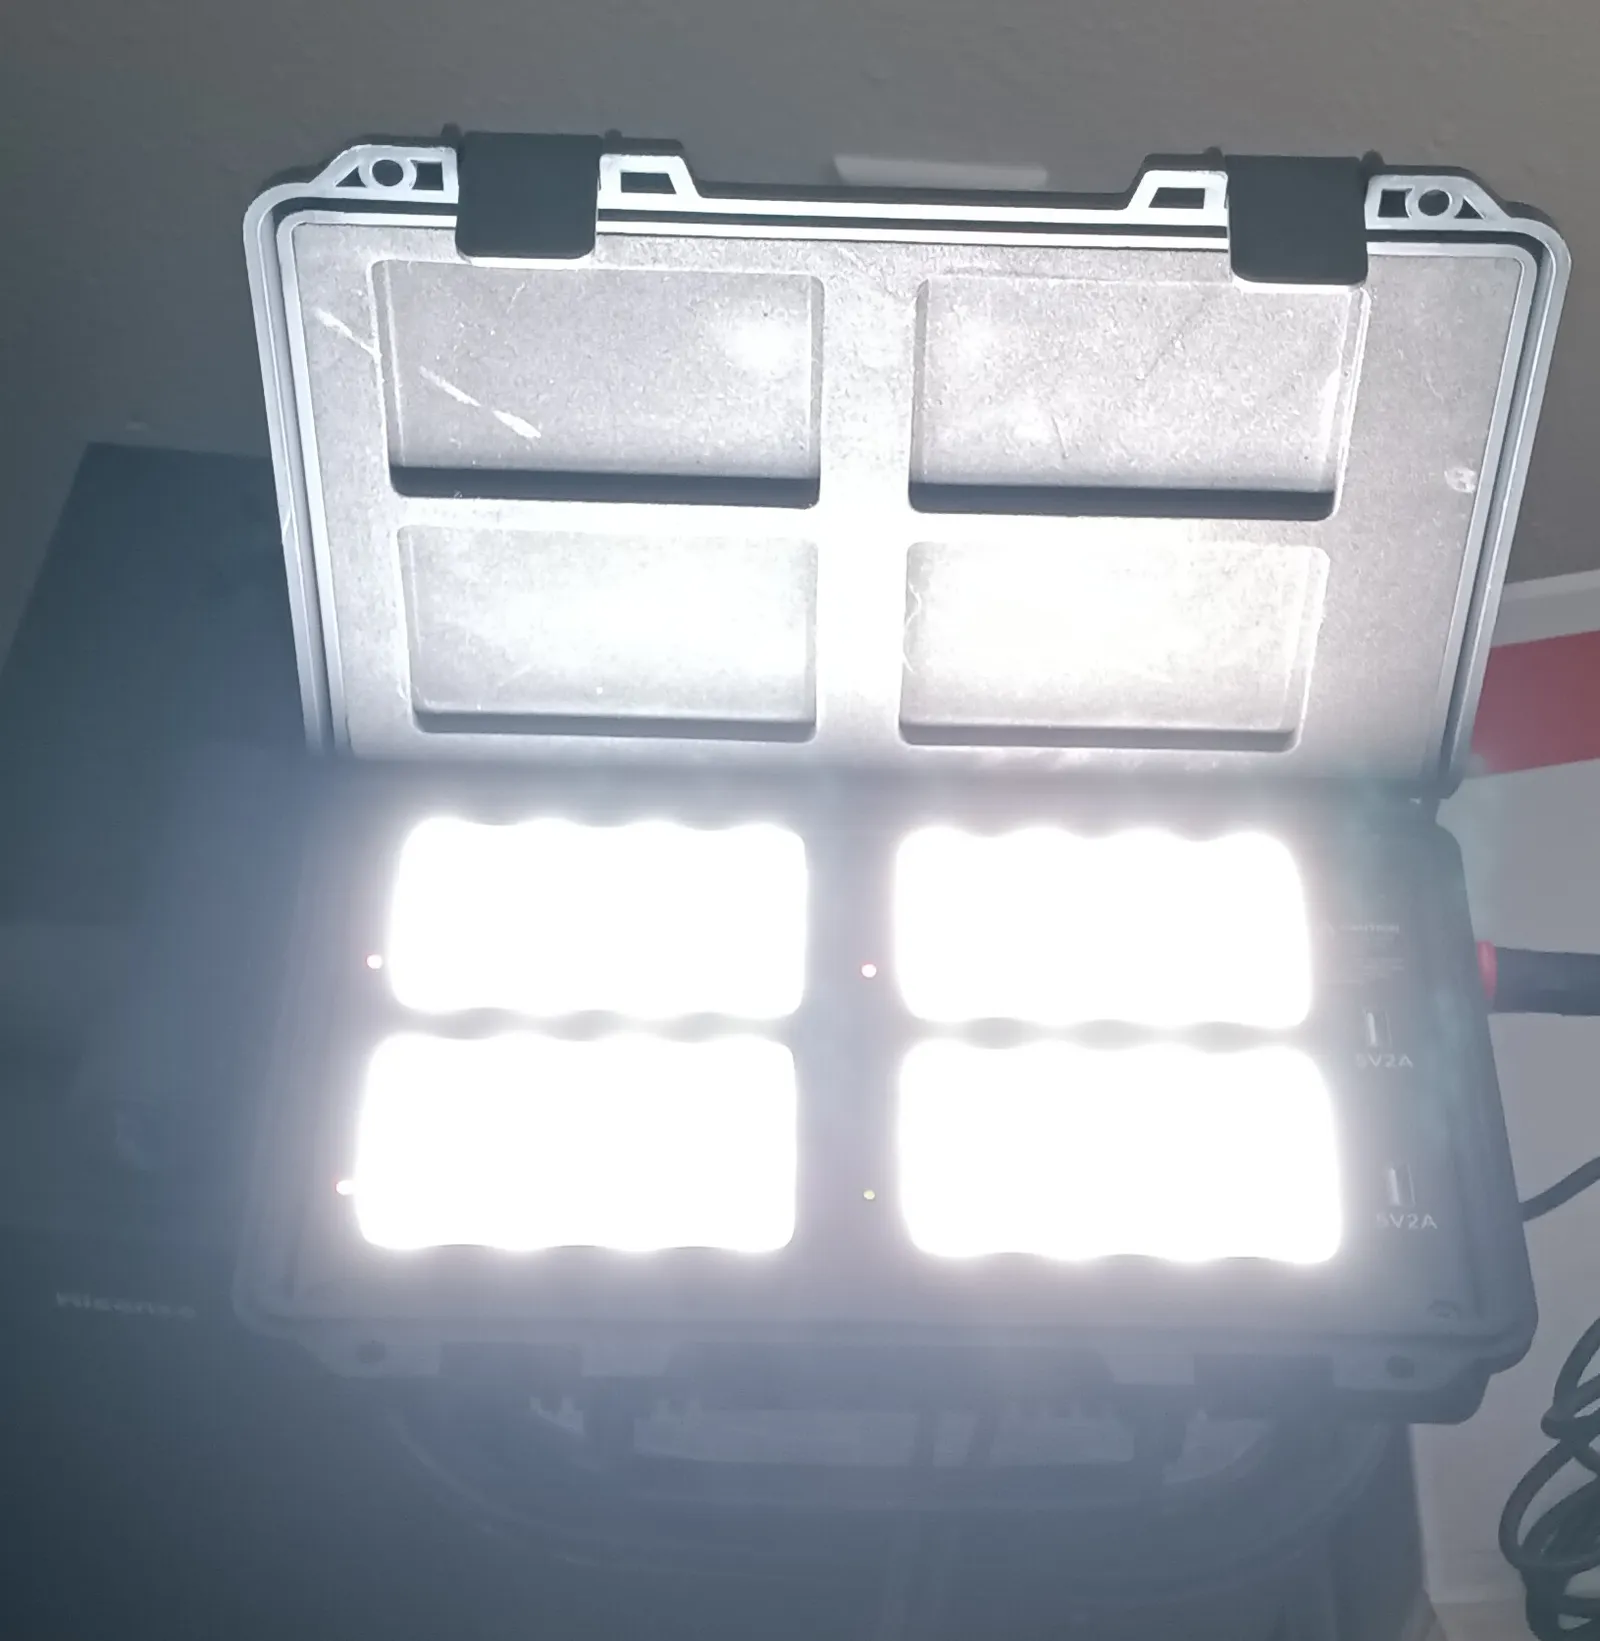 Aputure MC 4-Light Travel Kit